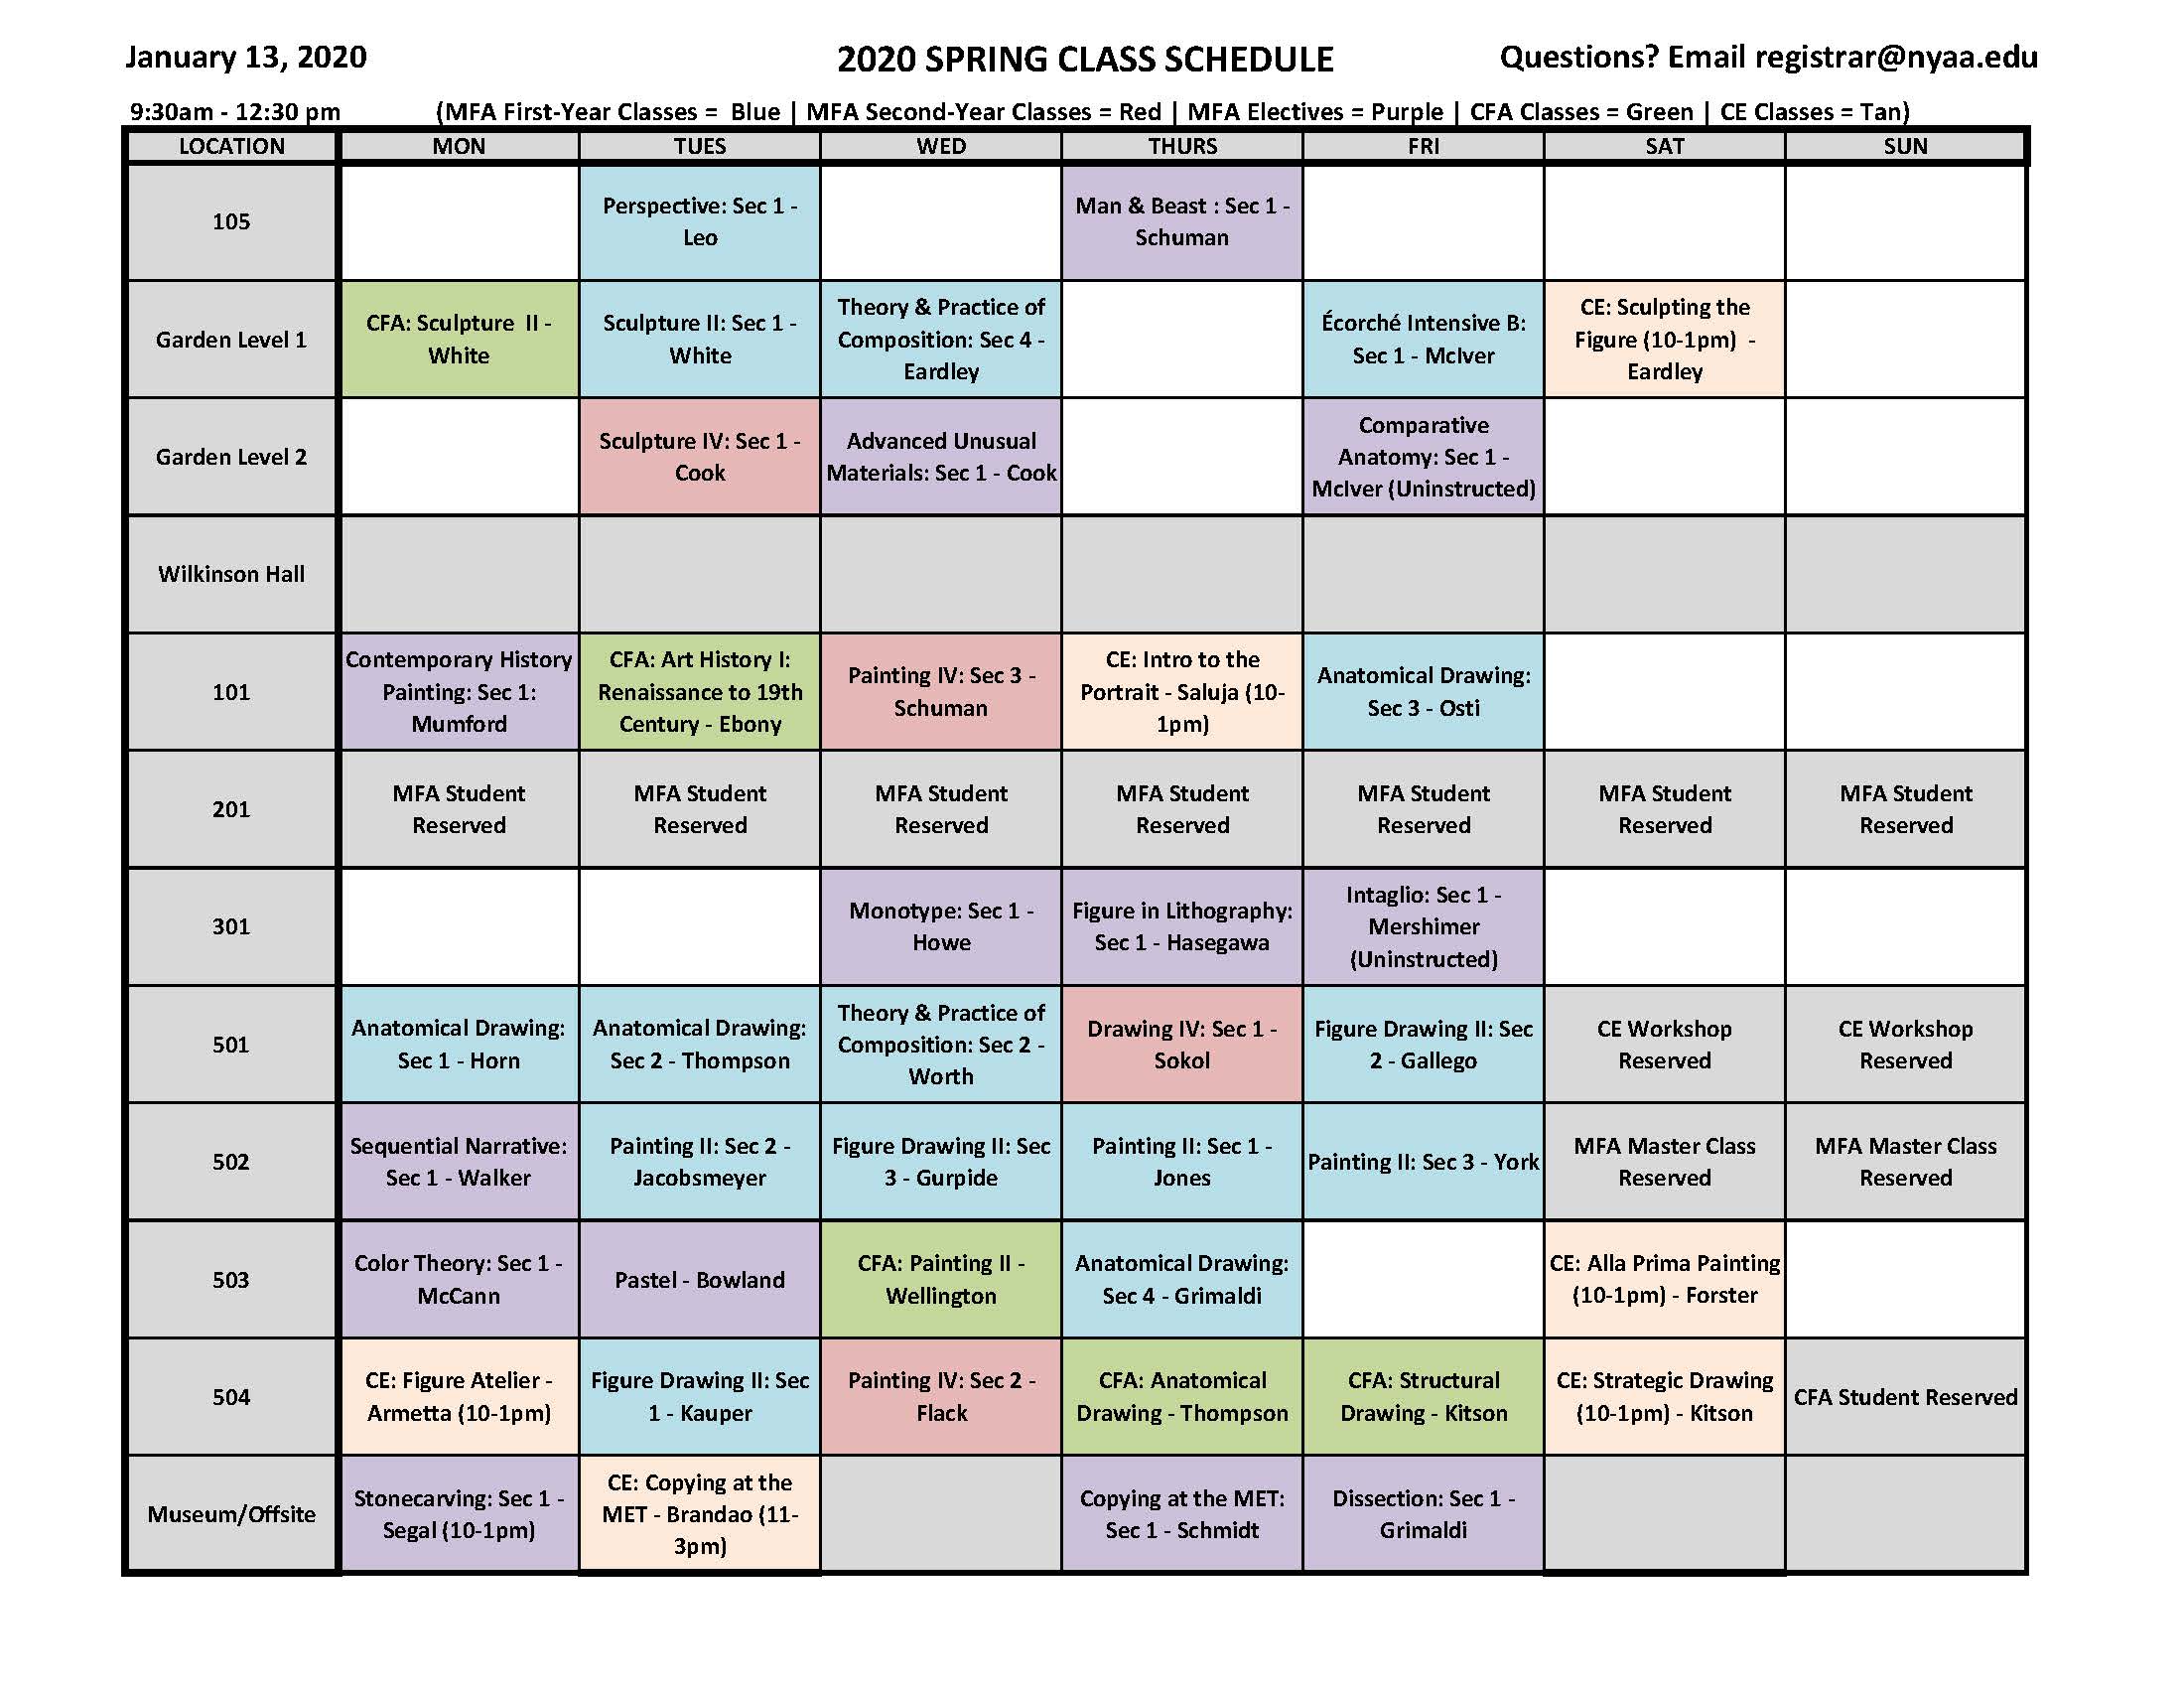 schedule-of-classes-rutgers